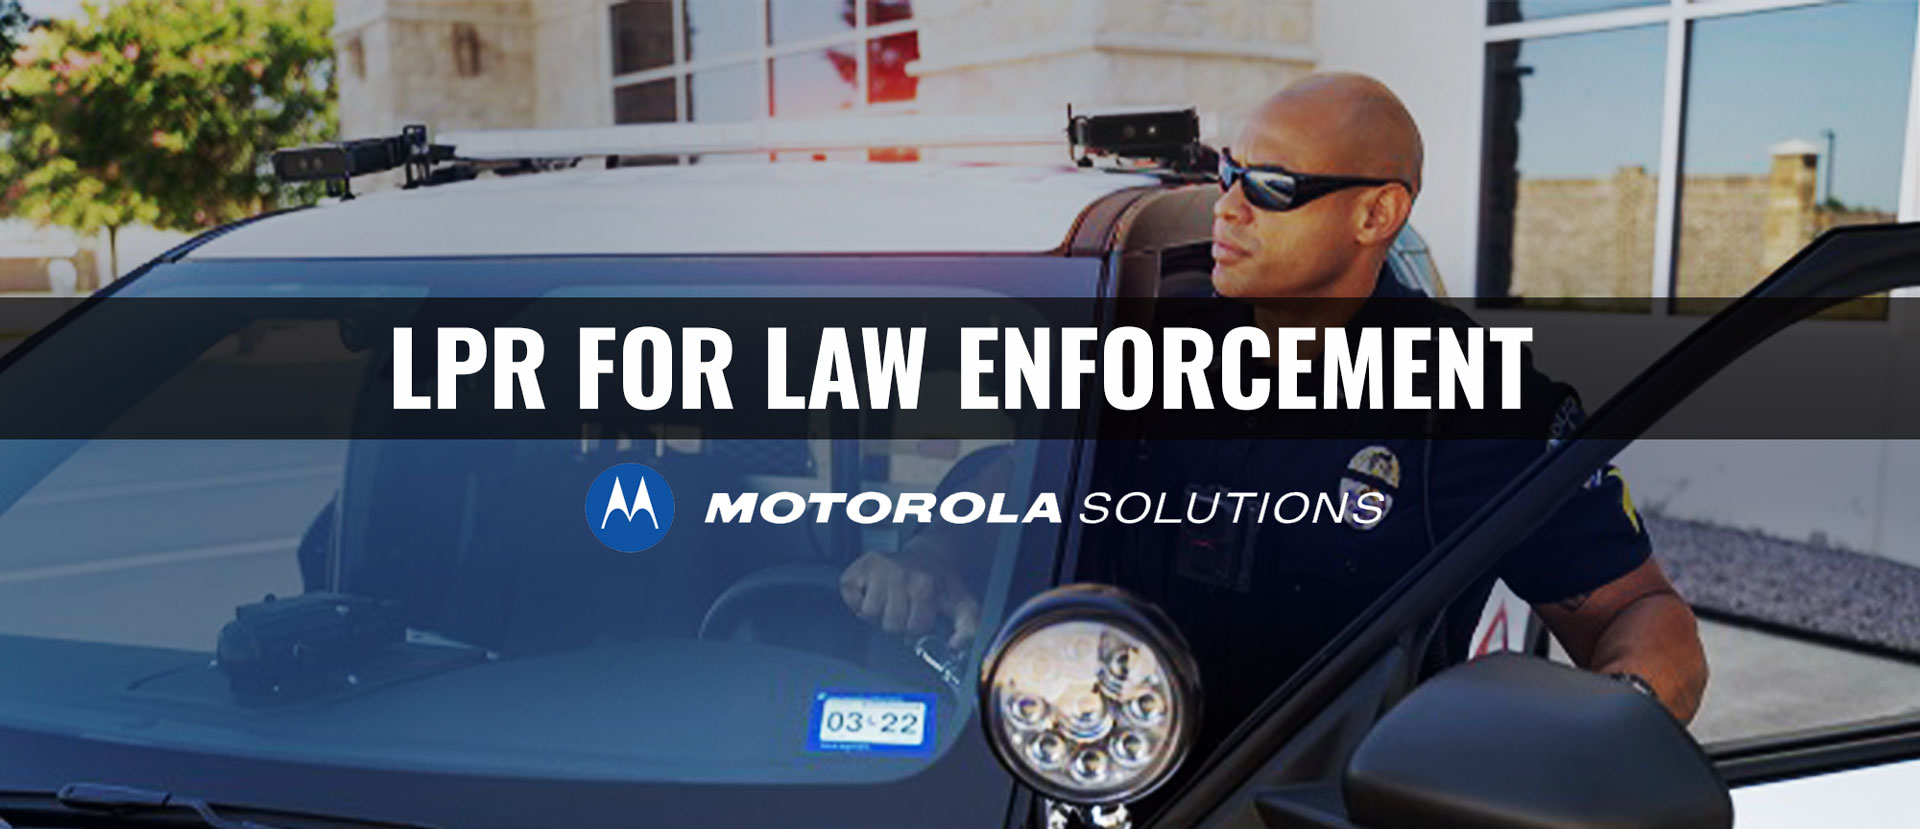 LPR for Law Enforcement